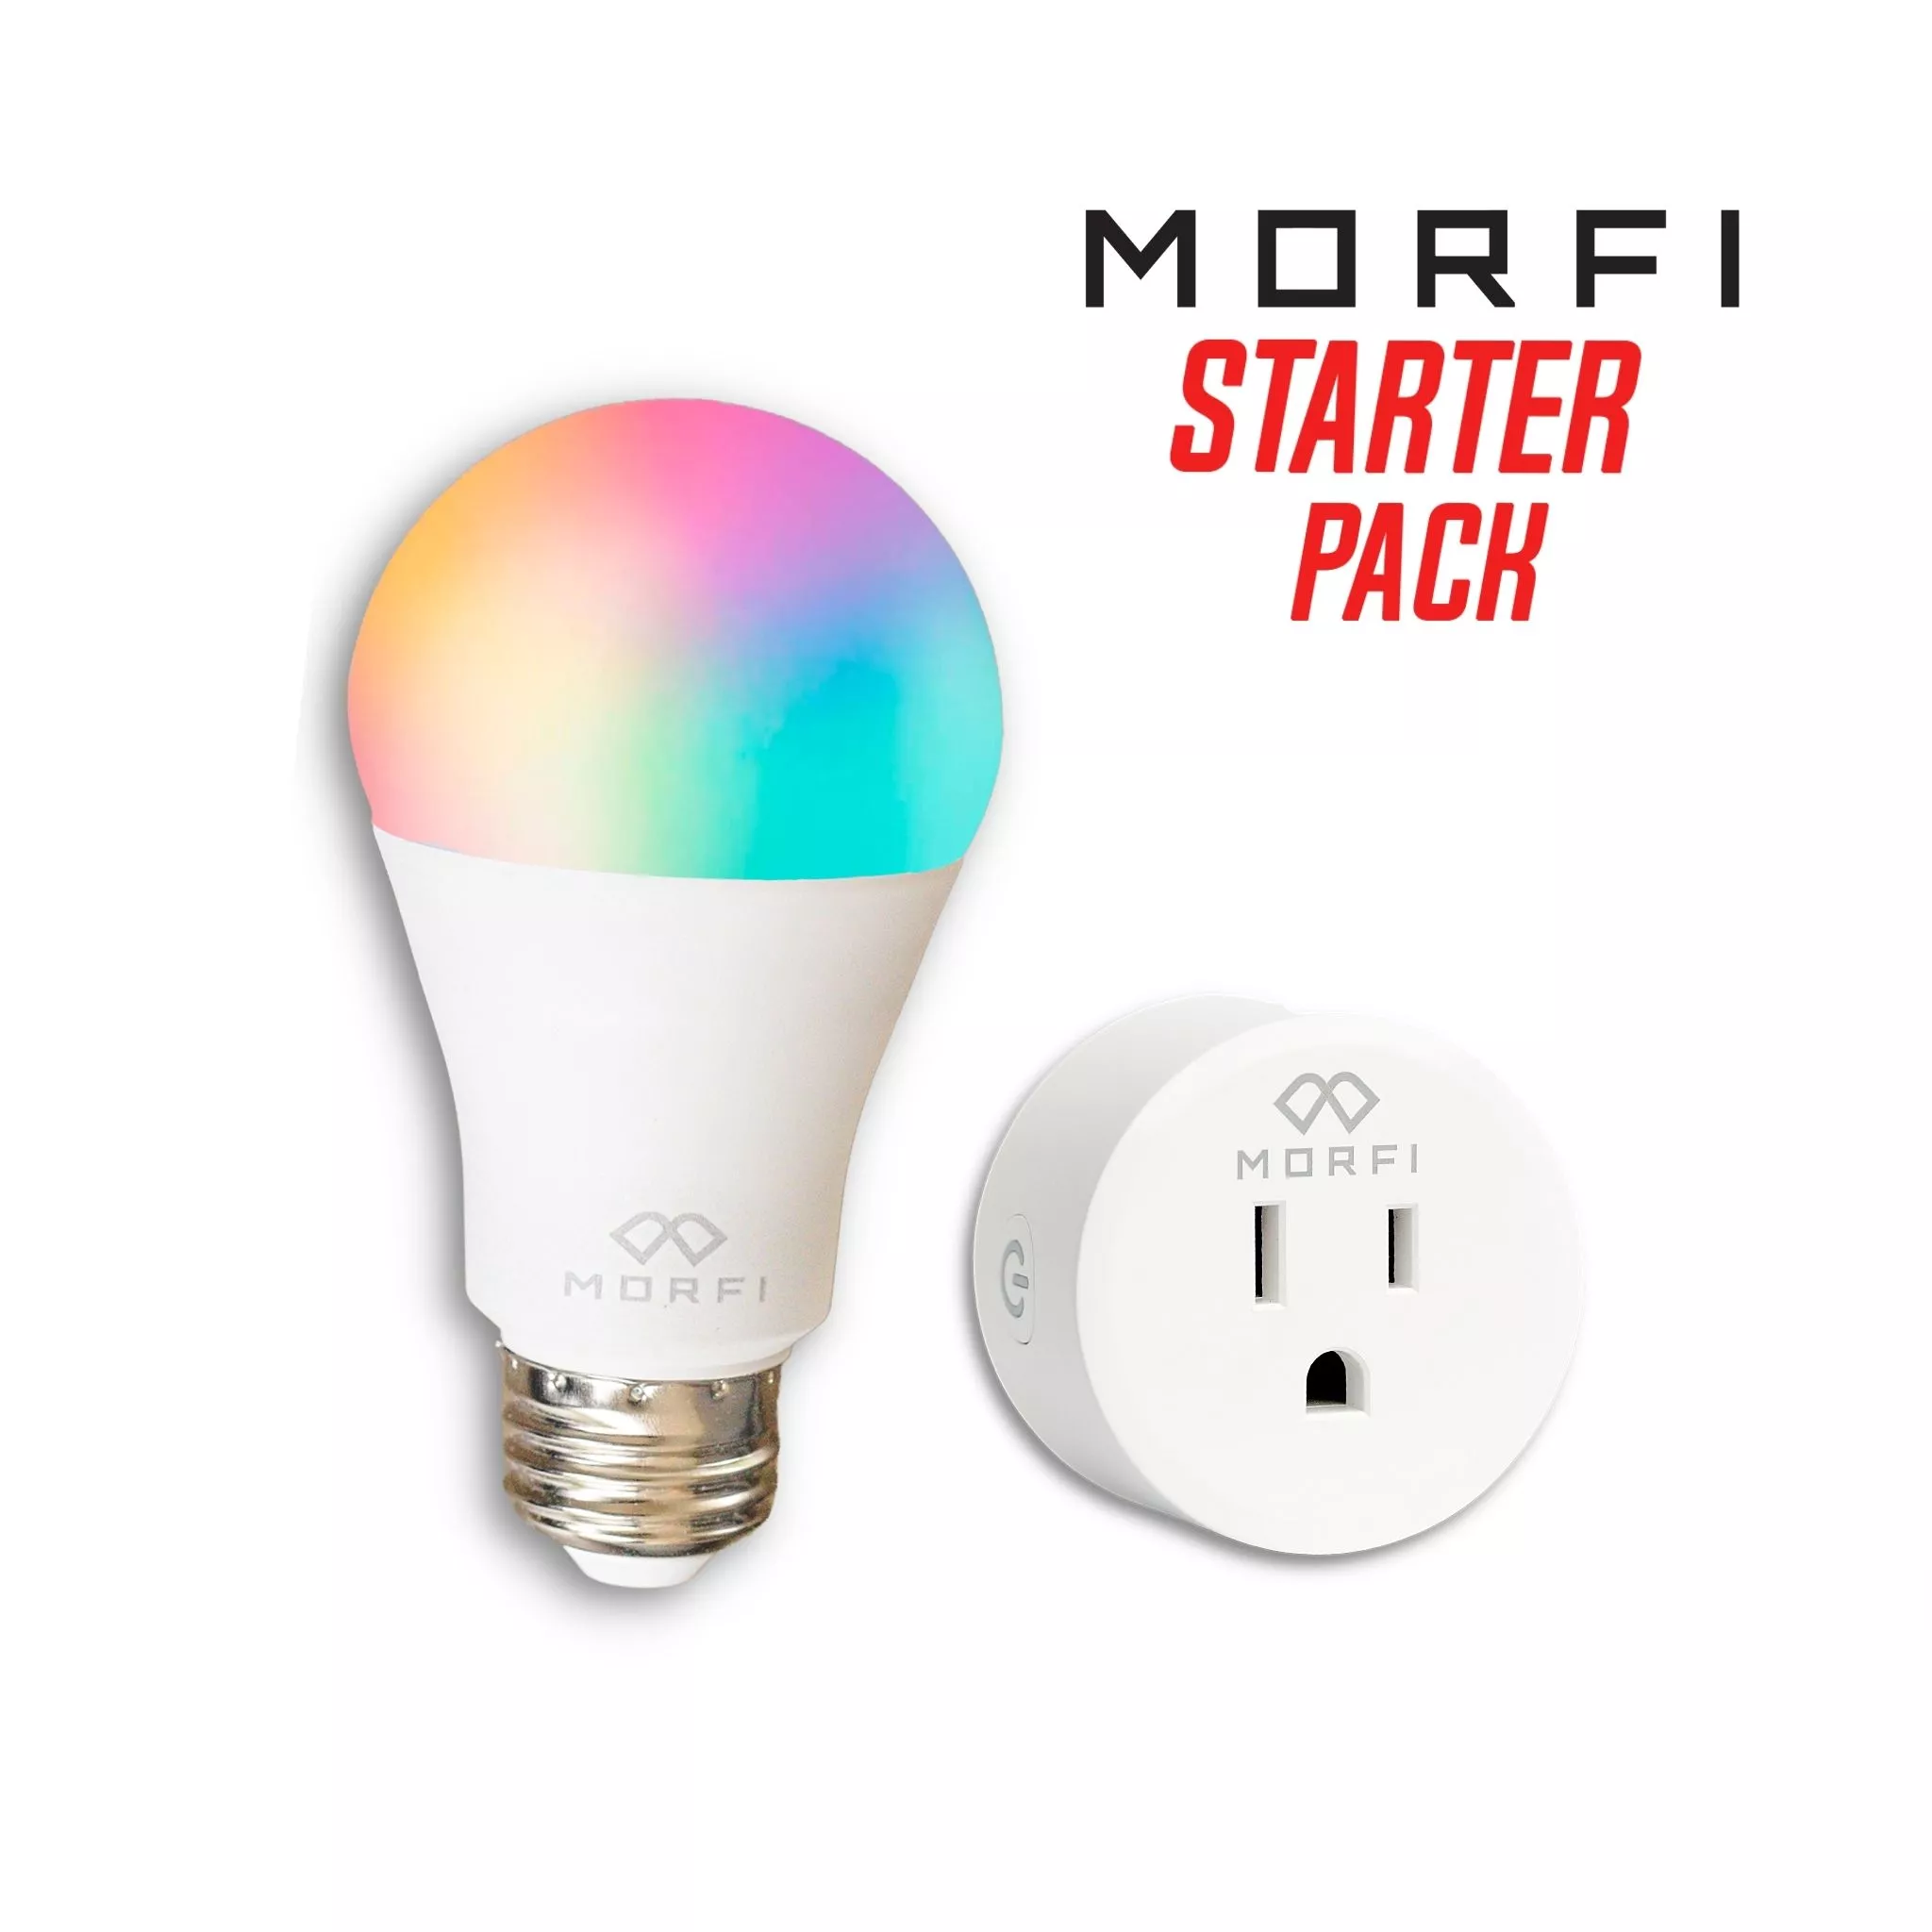 Morfi Starter Pack - Combo Foco + Plug inteligente - Compatible con Alexa y Asistente de Google